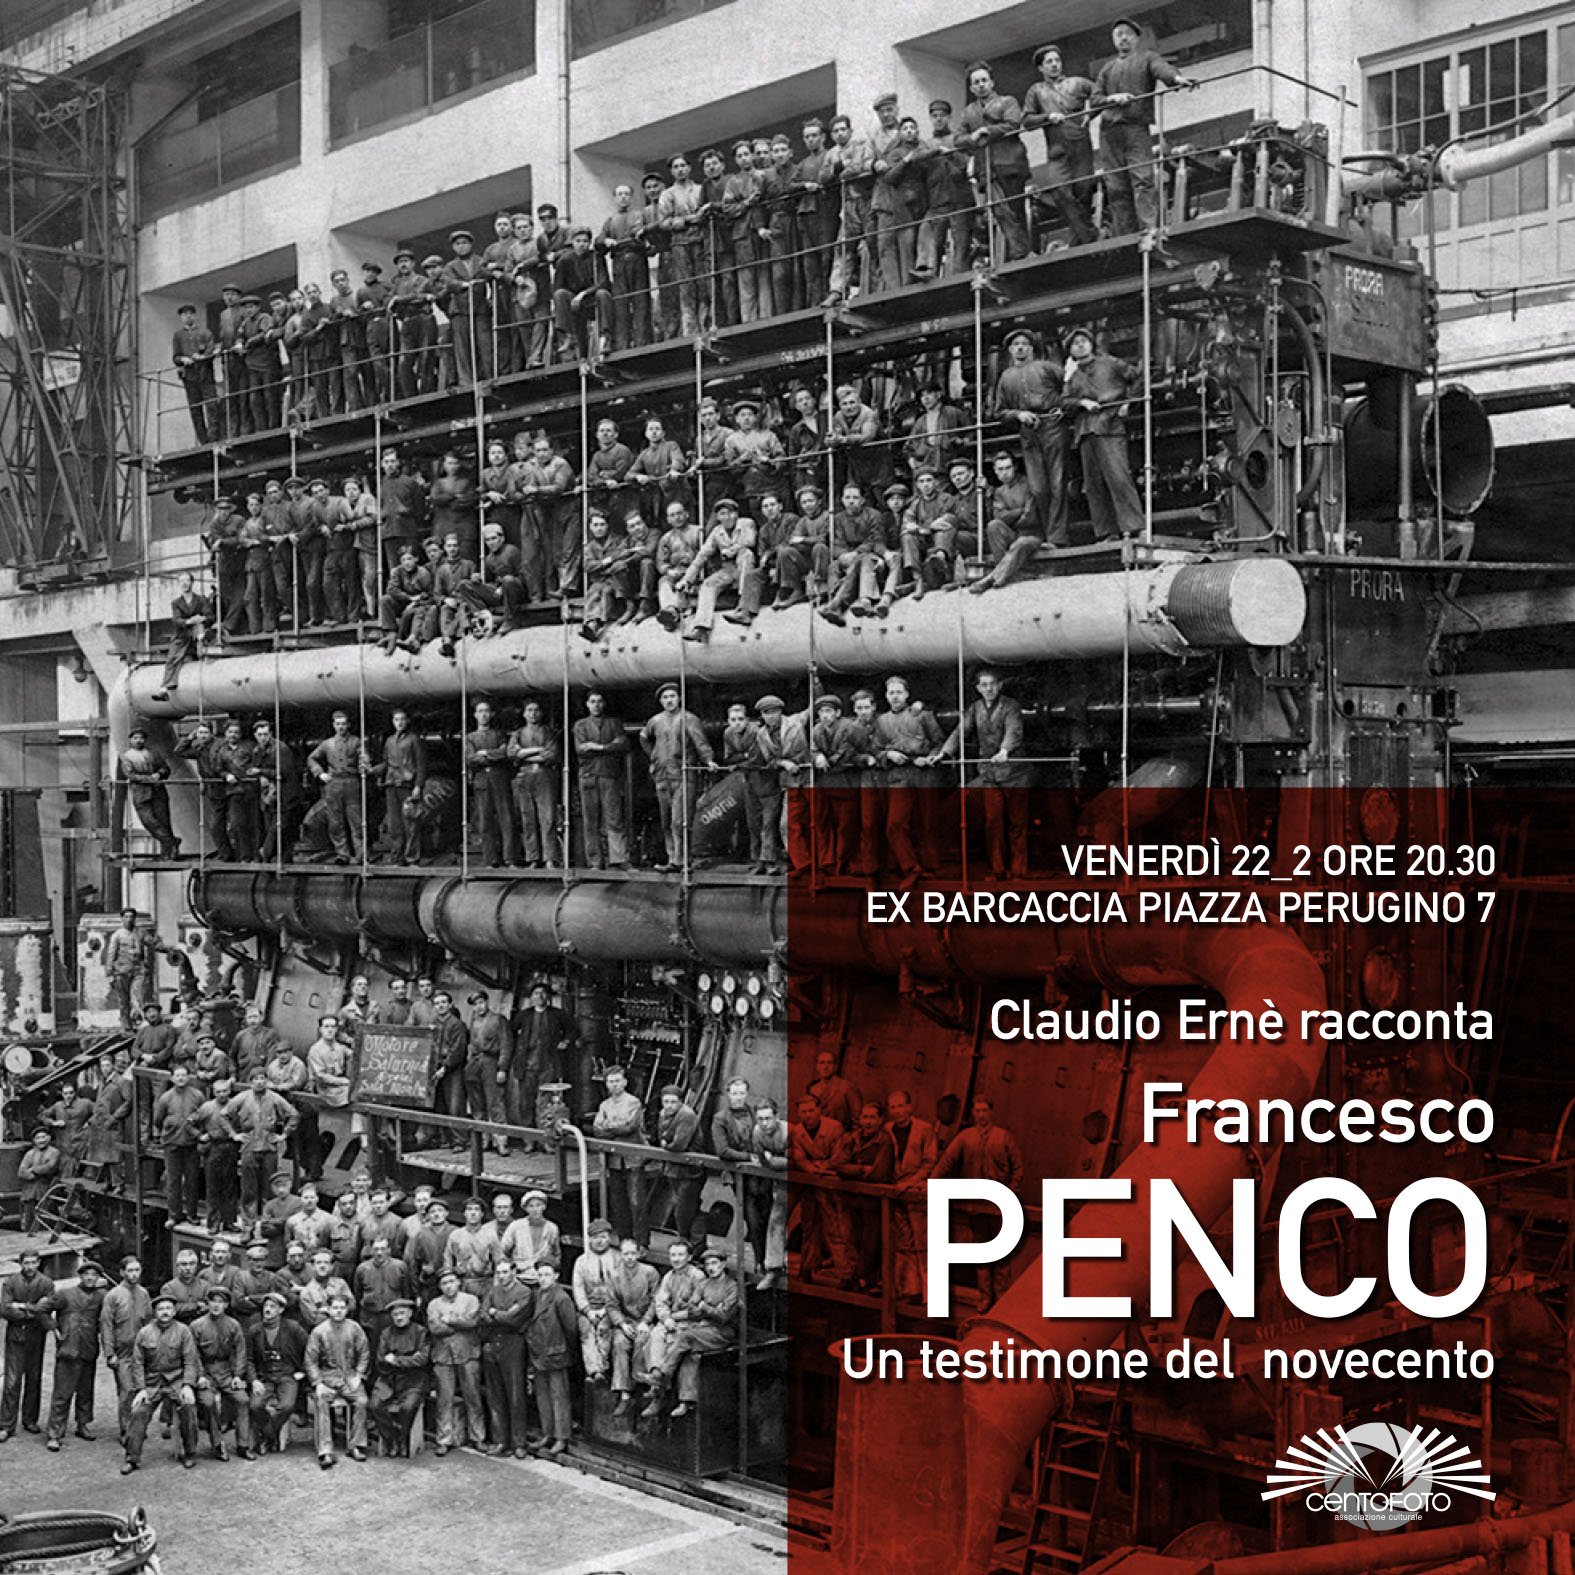 Al momento stai visualizzando Incontri Fotografici: Alla scoperta della Trieste del 900 con le fotografie di Penco